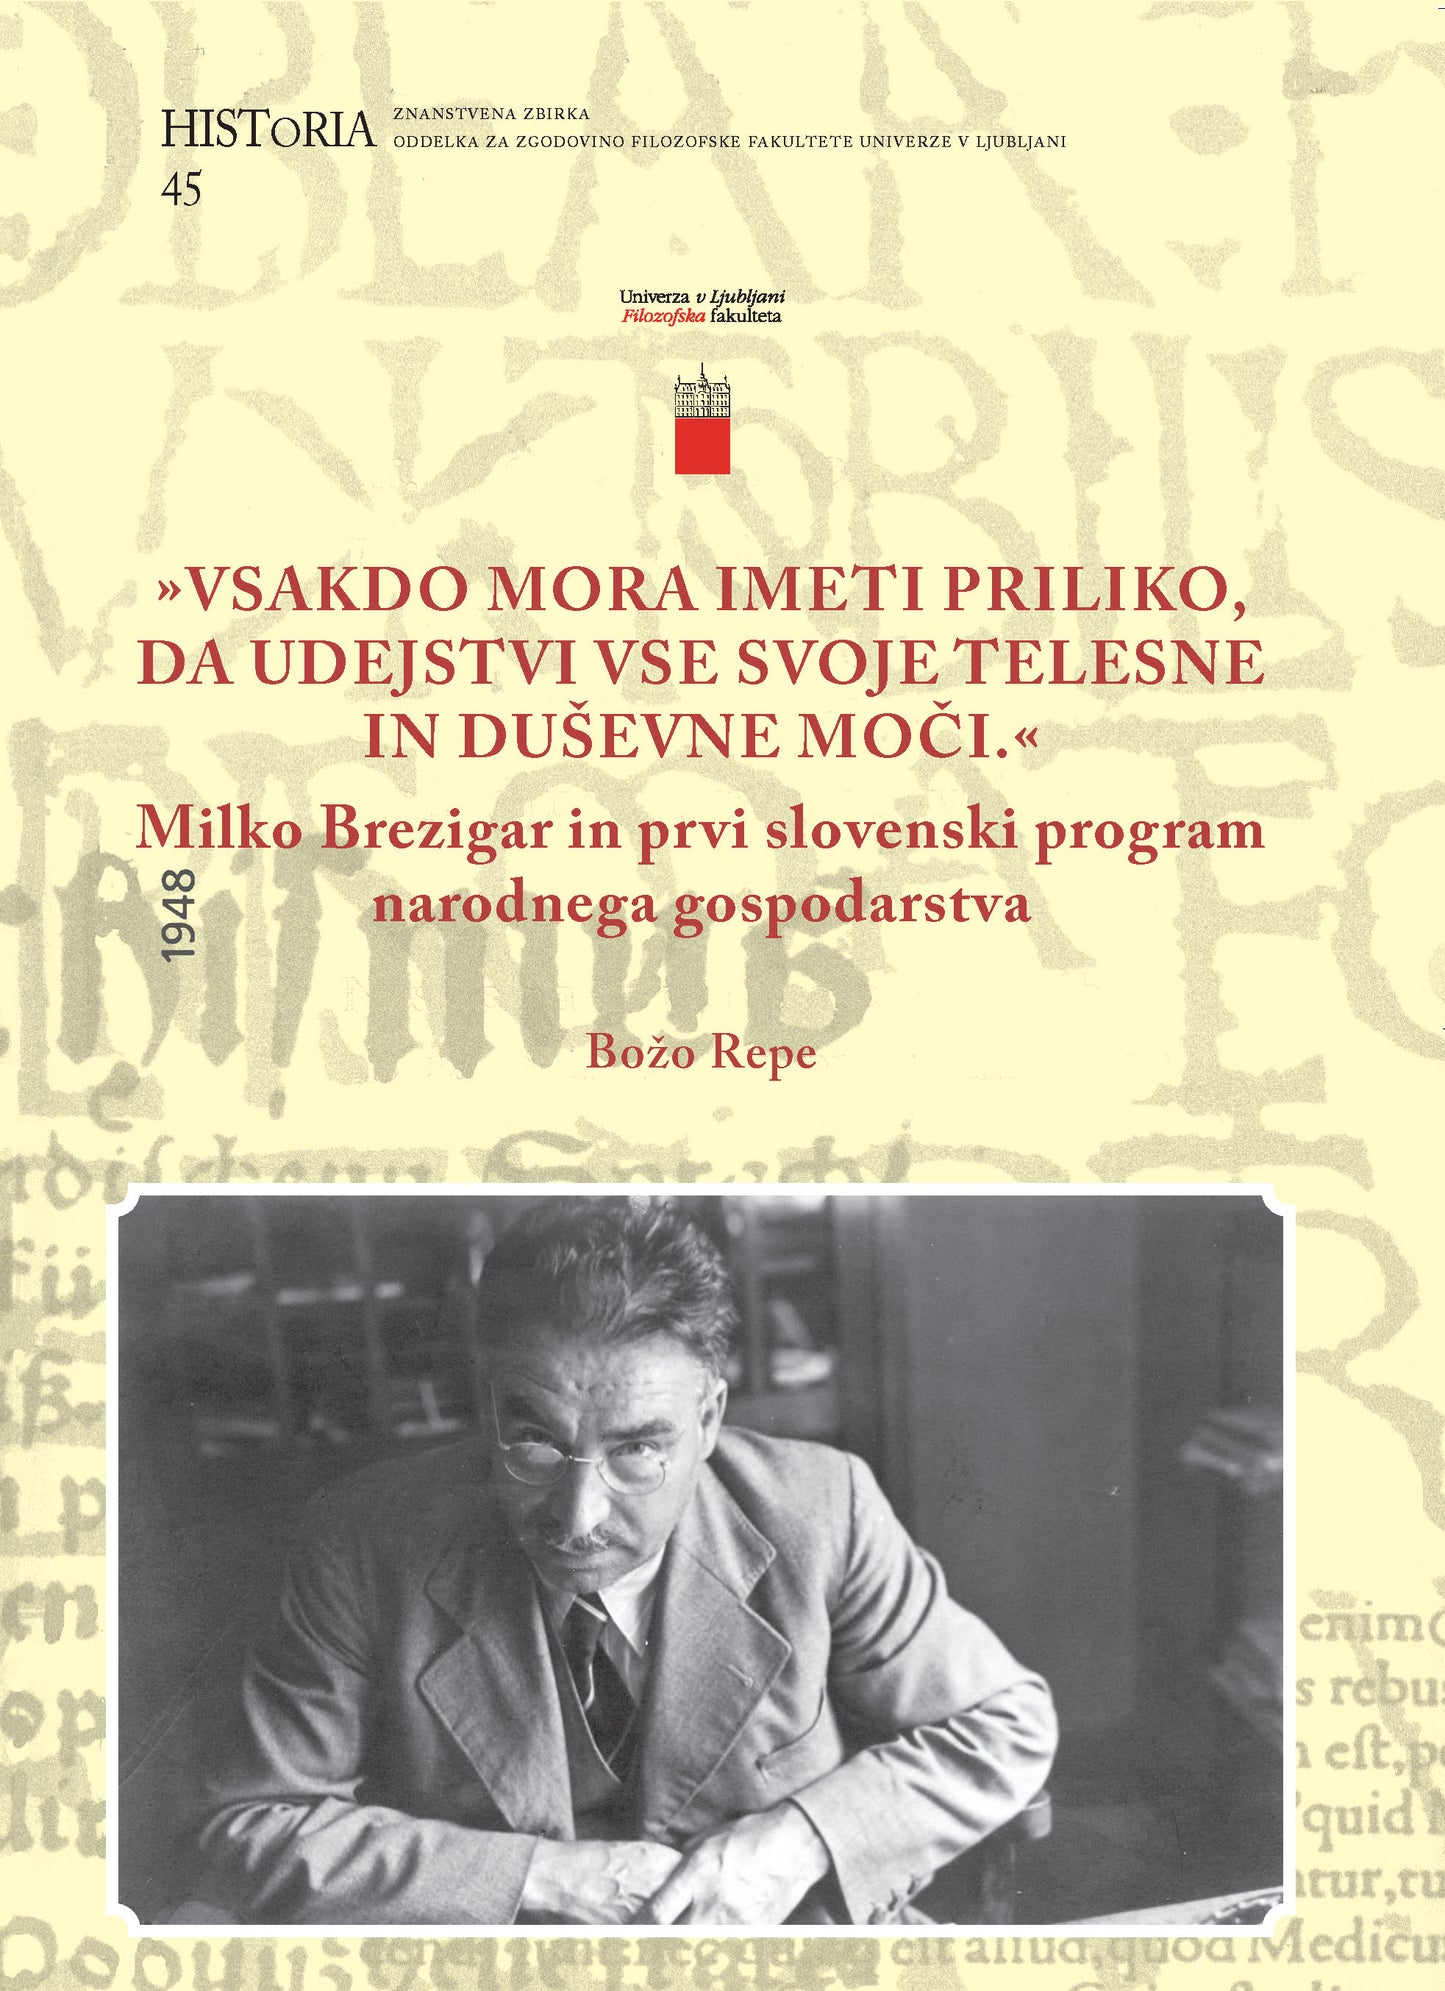 "Vsakdo mora imeti priliko, da udejstvi vse svoje telesne in duševne moči.": Milko Brezigar in prvi slovenski program narodnega gospodarstva